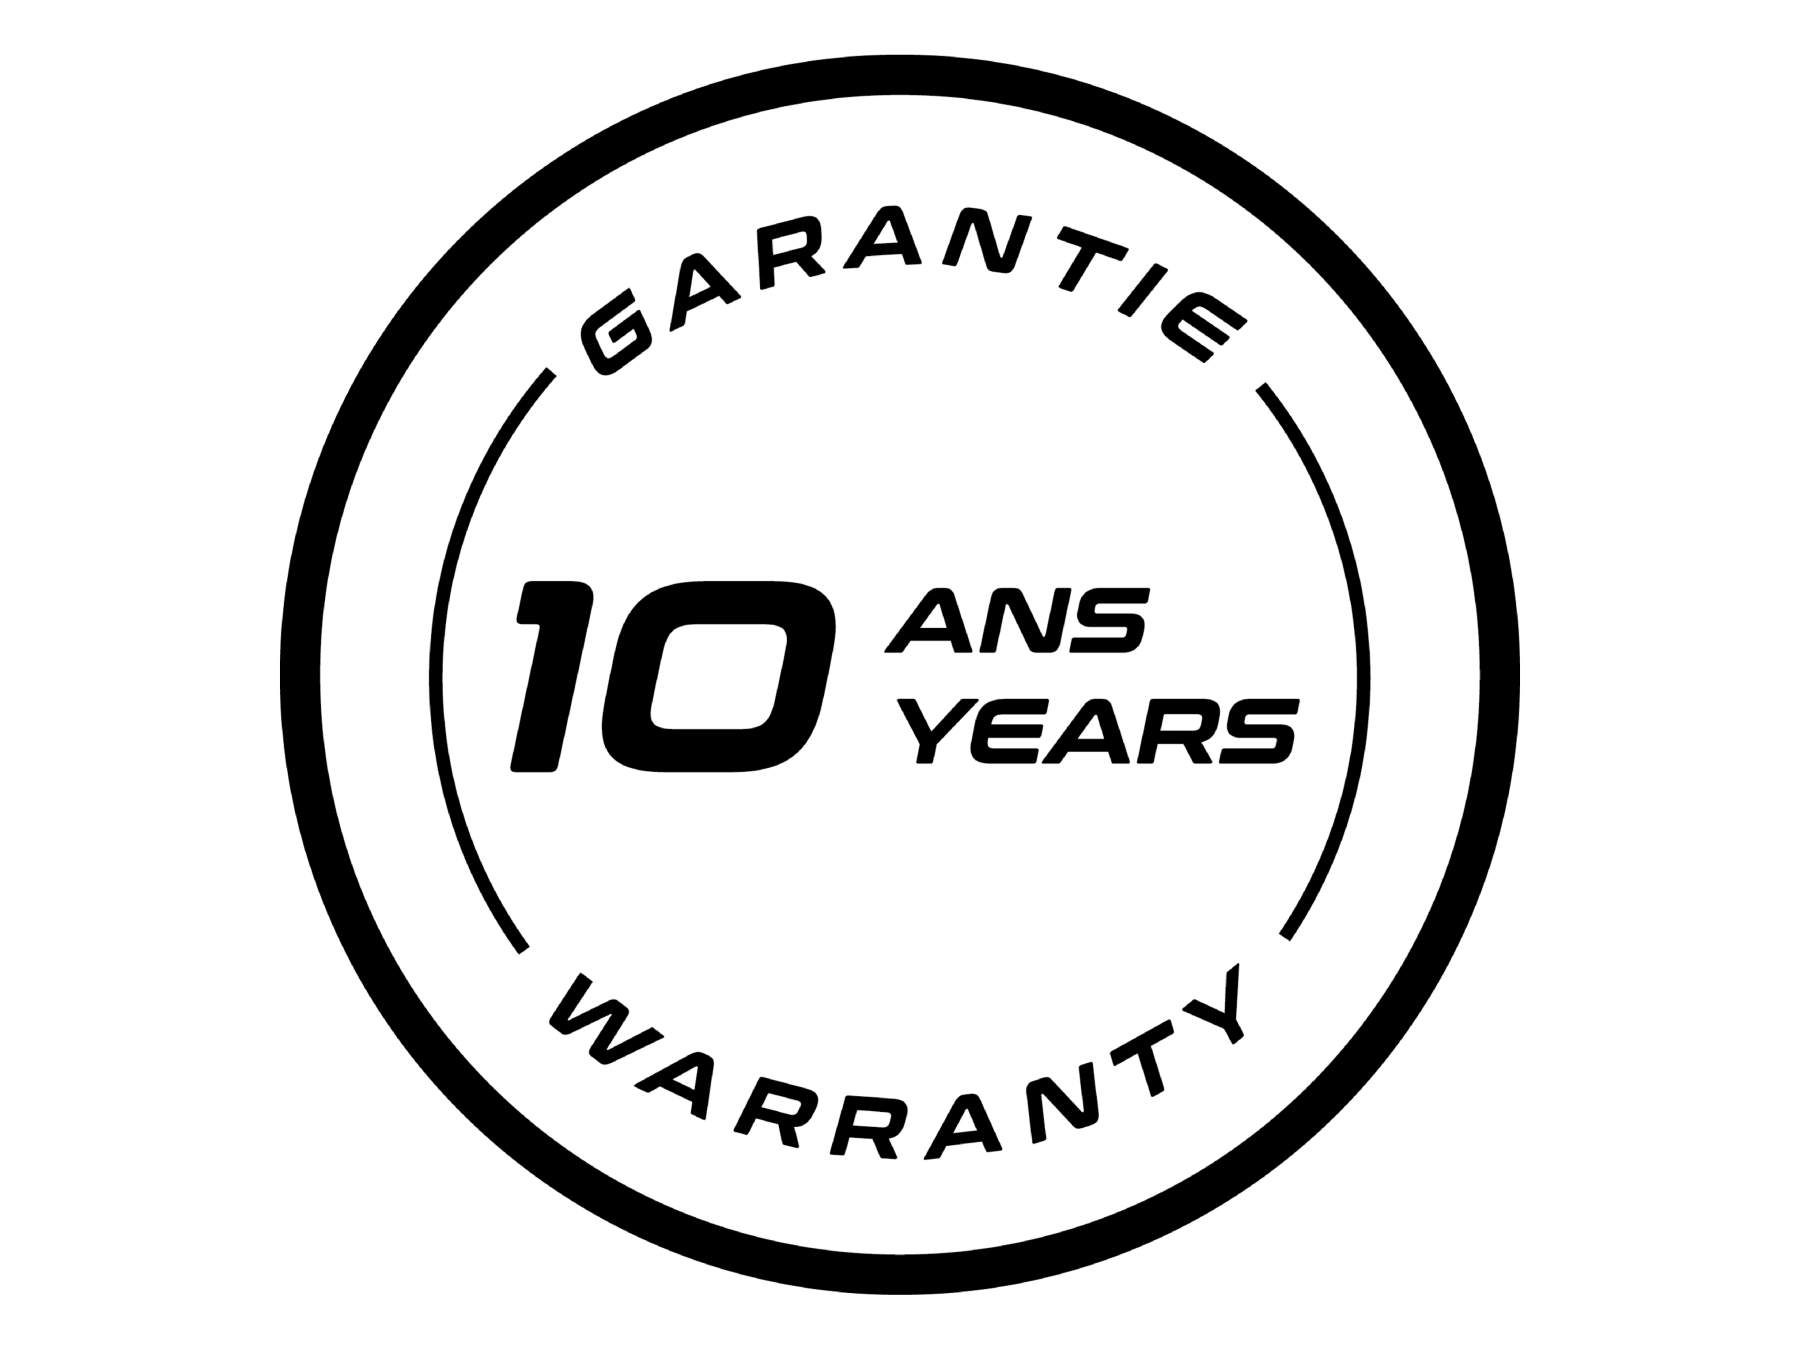 Garantie 10 Jahre